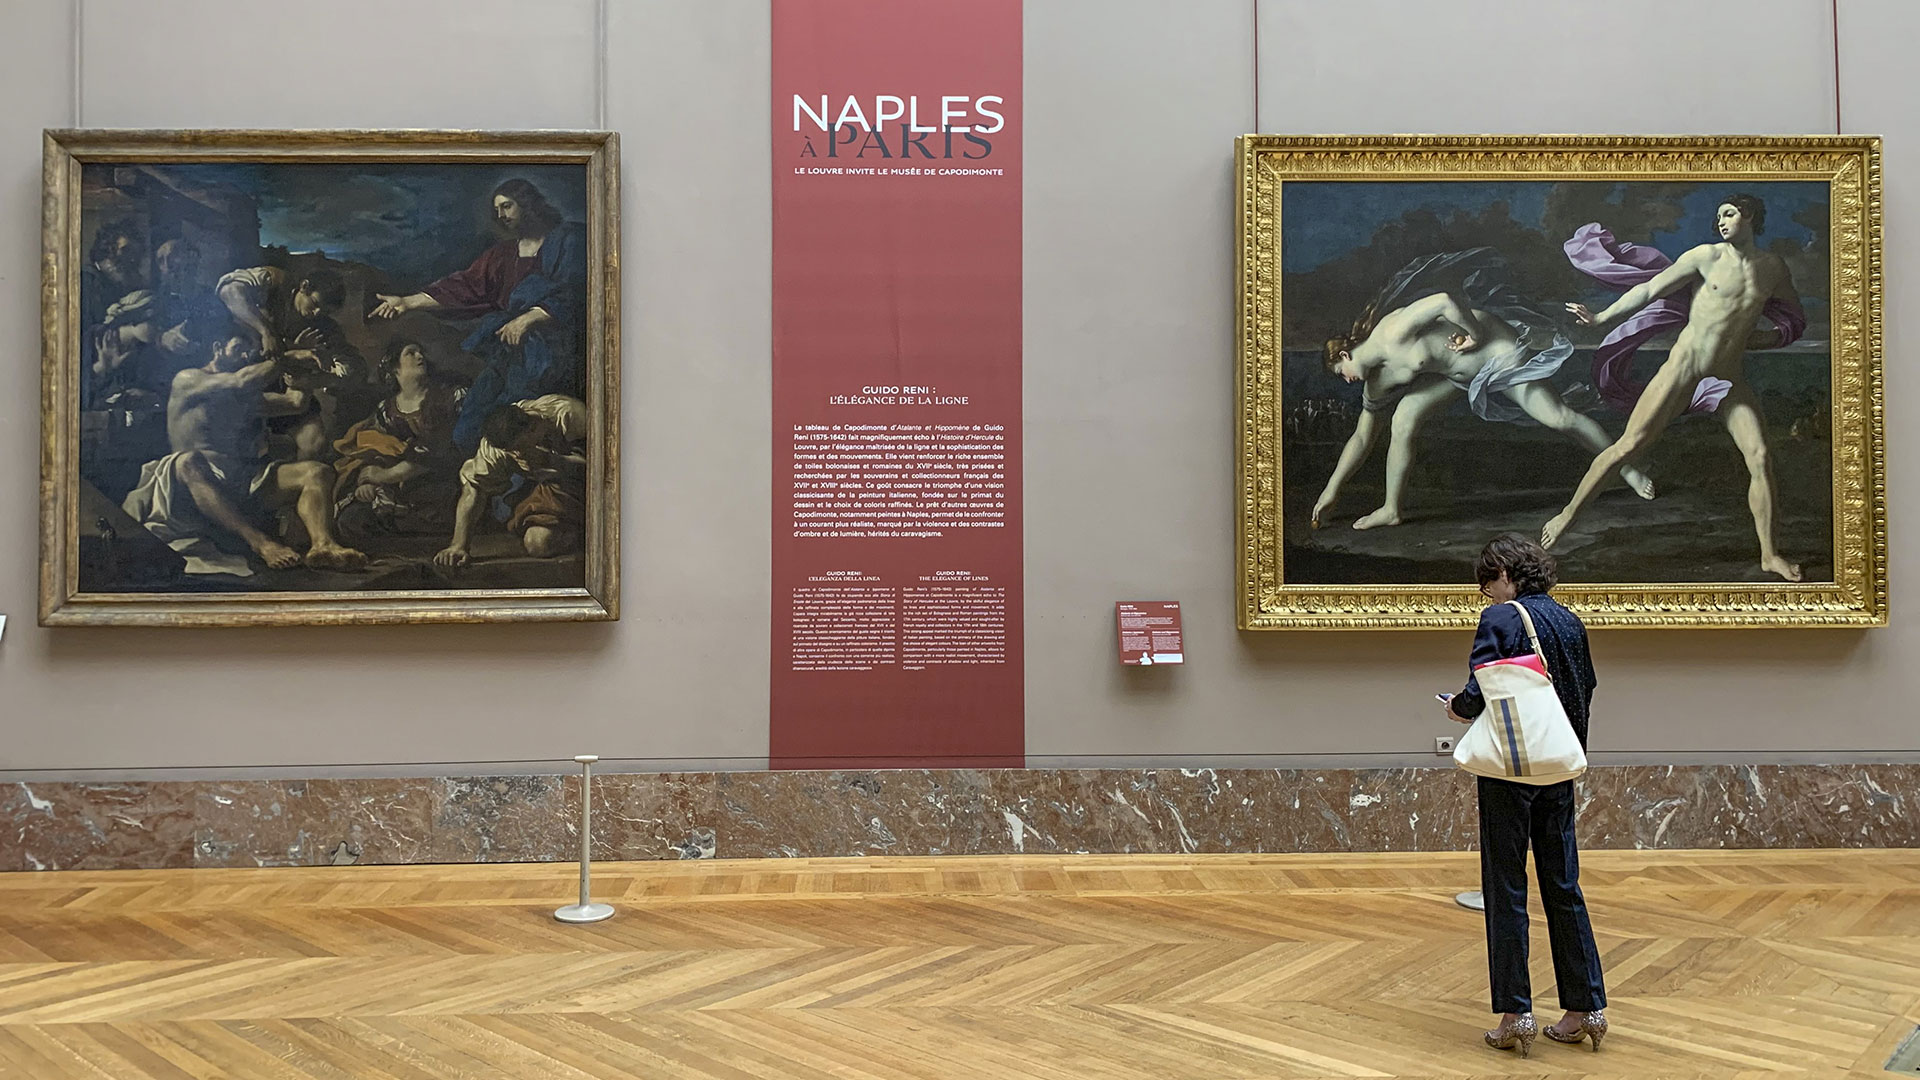 Una mujer observa dos cuadros de la exposición "Nápoles en París" en el Museo del Louvre de la capital francesa (Foto: EFE/ Lydia Hernández Téllez)
